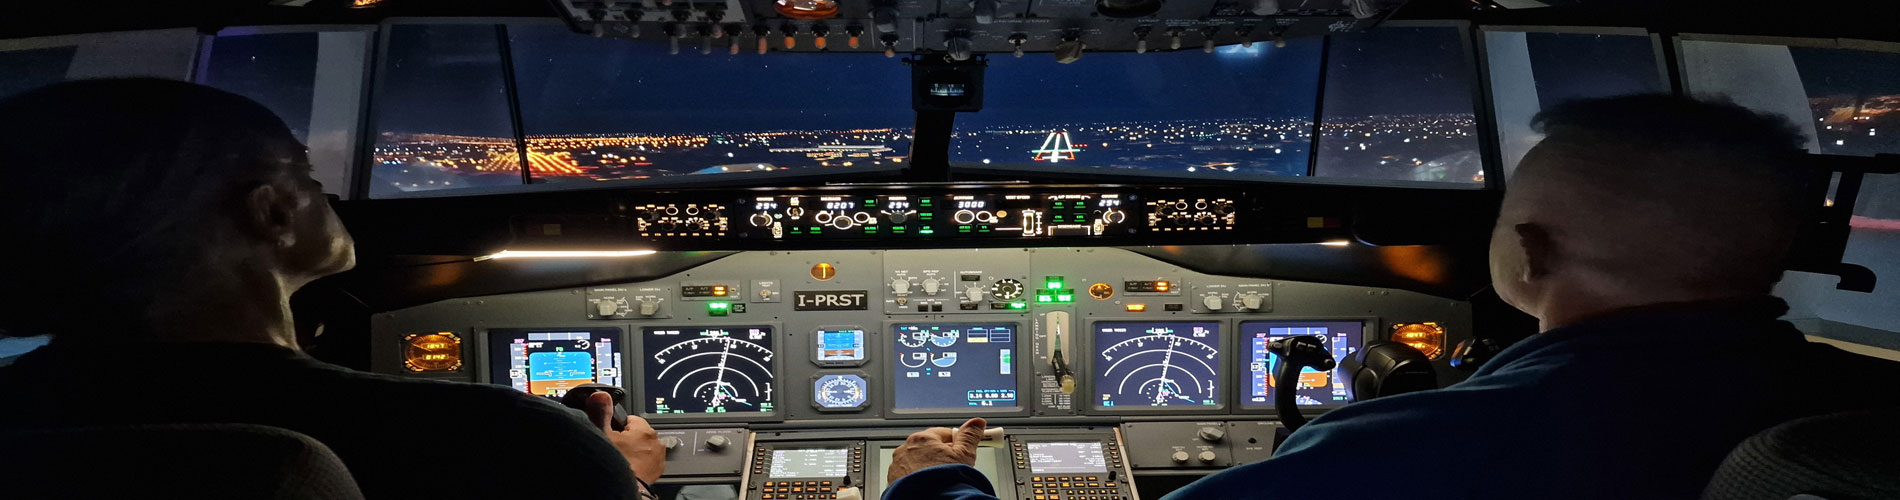 Airbus simulator Rimini